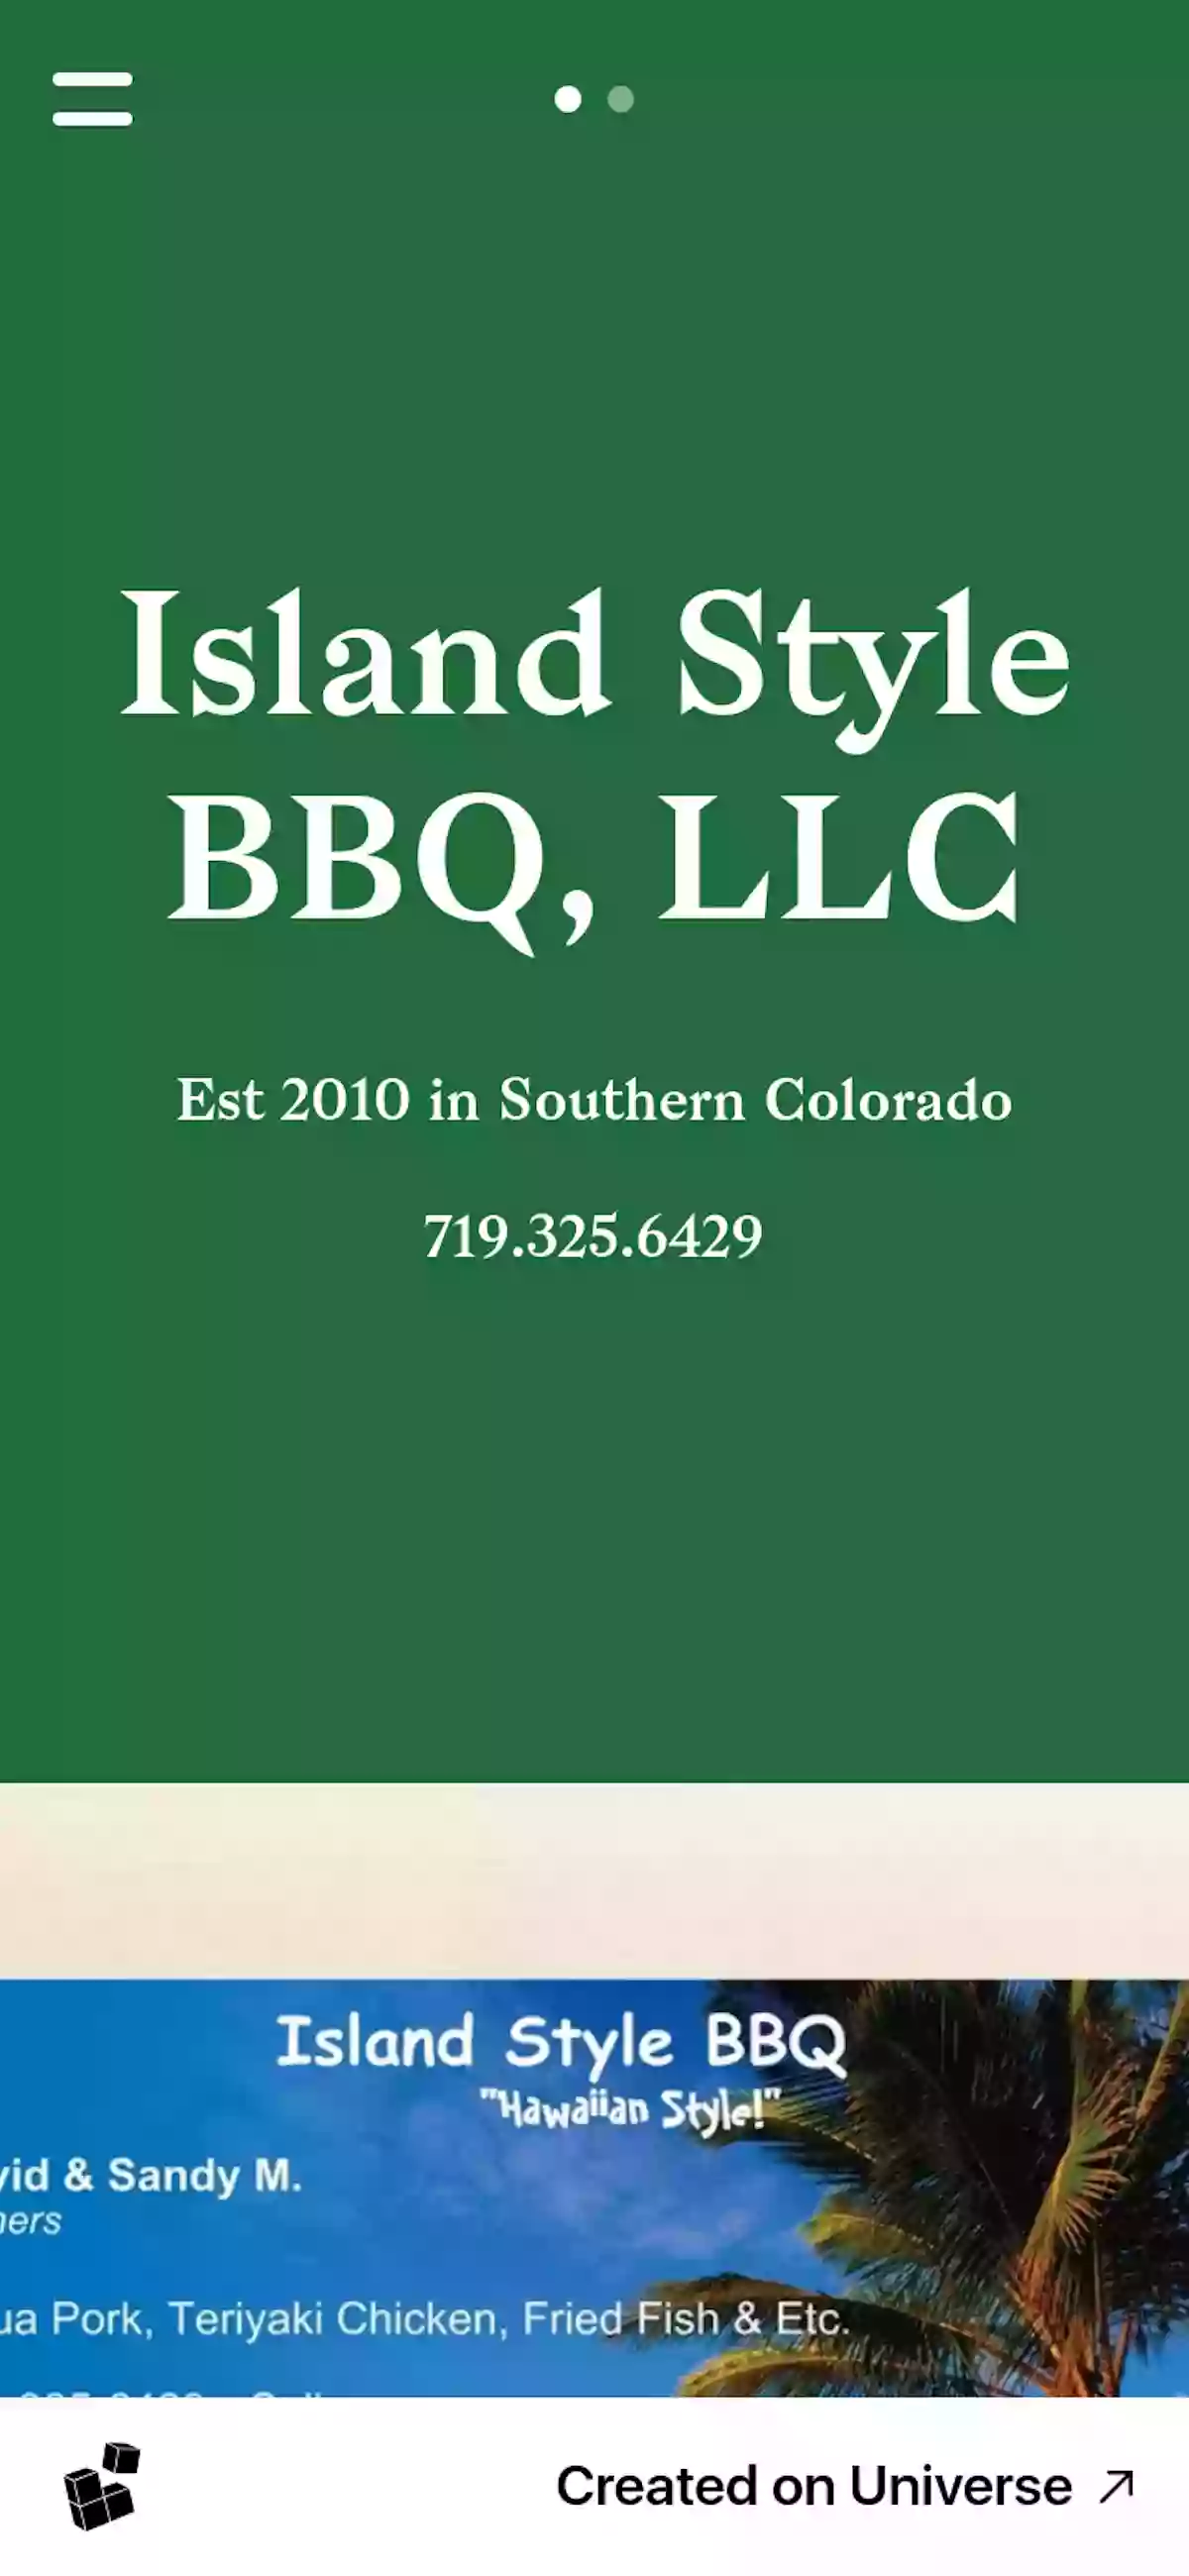 Island Style BBQ, LLC